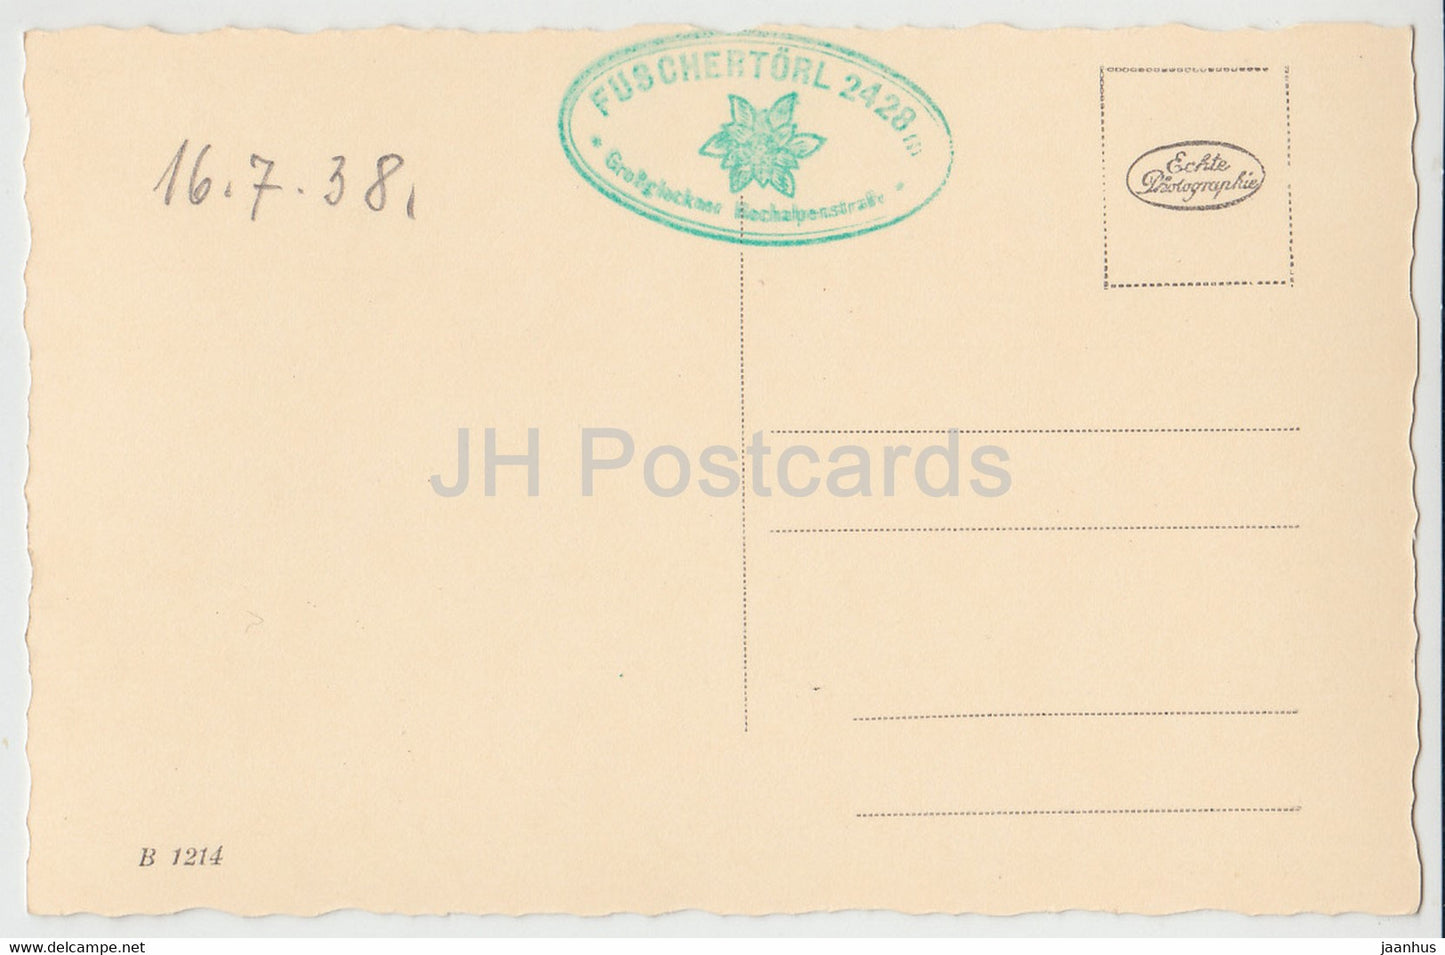 Hochtortunnel 317 m - Gr Glockner - Hochalpenstraße - altes Auto - alte Postkarte - 1938 - Österreich - unbenutzt